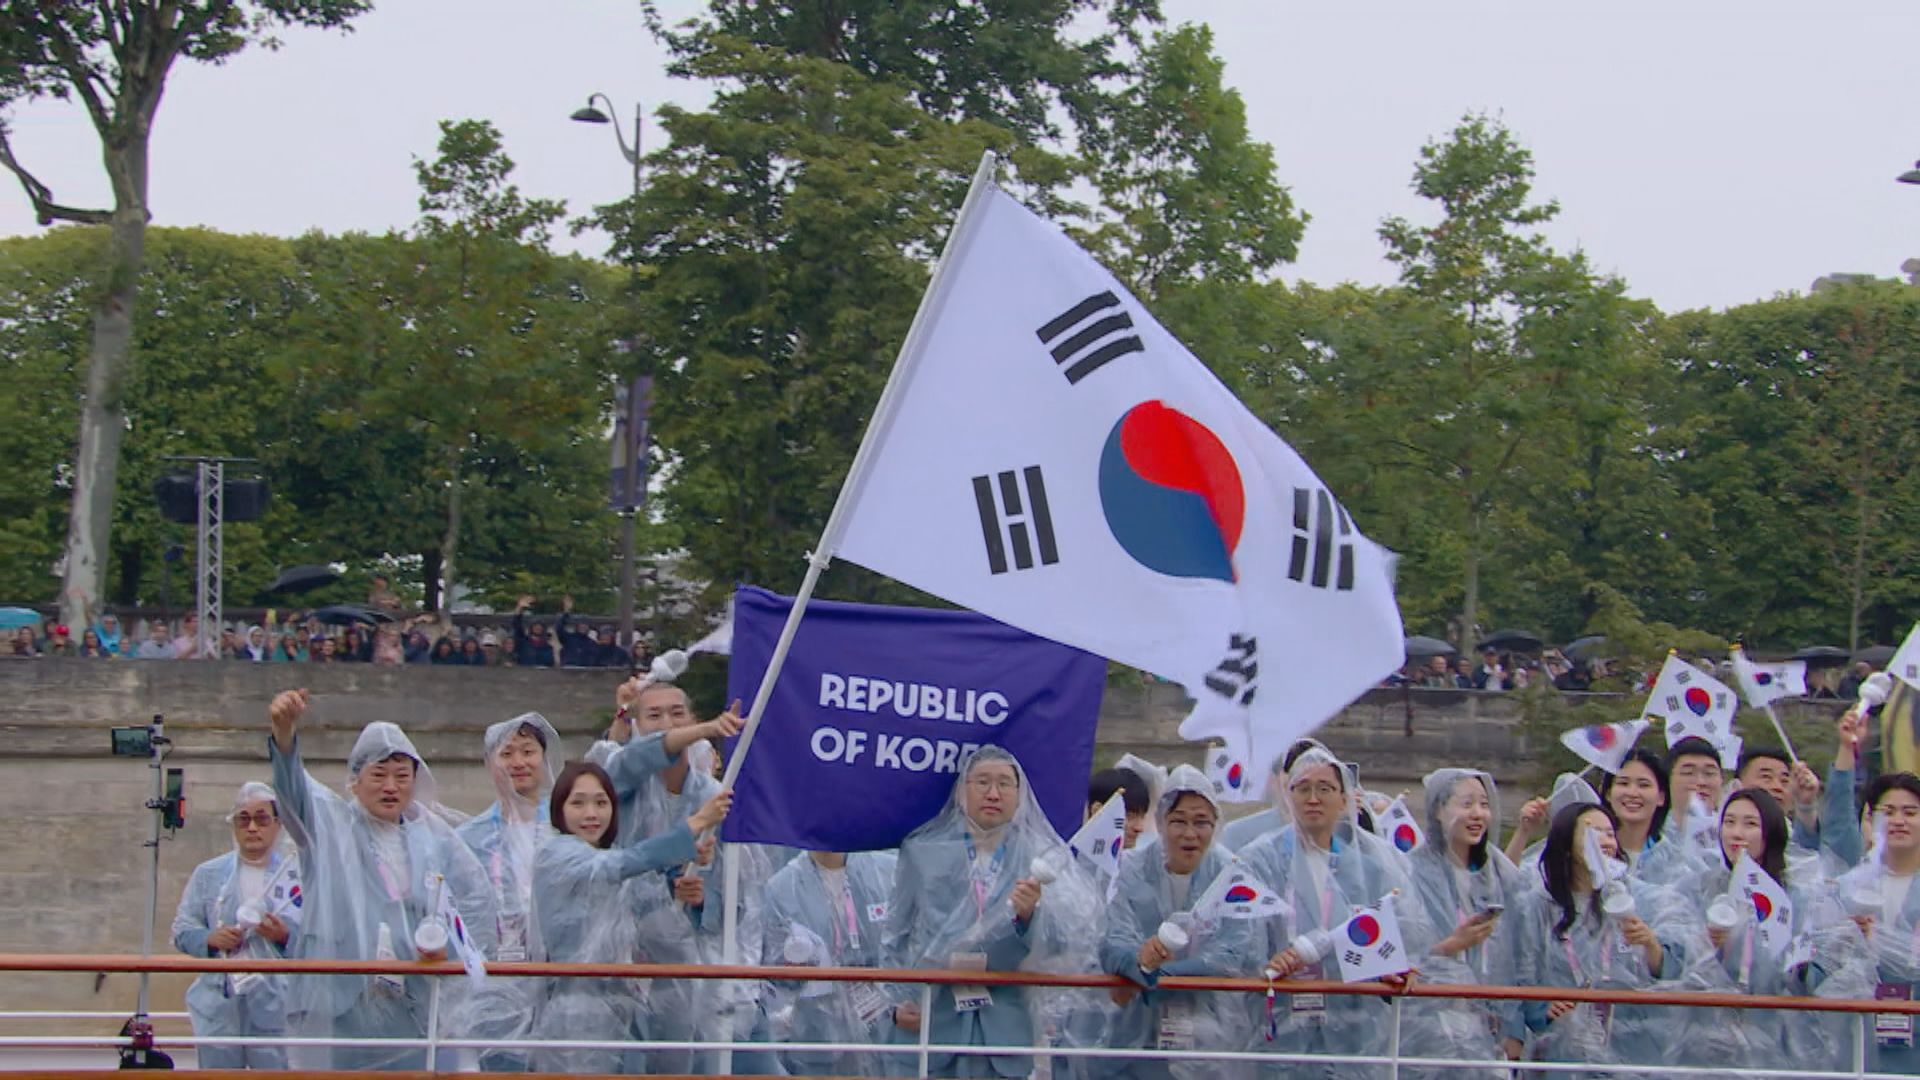 奧運開幕儀式誤將南韓公布為北韓